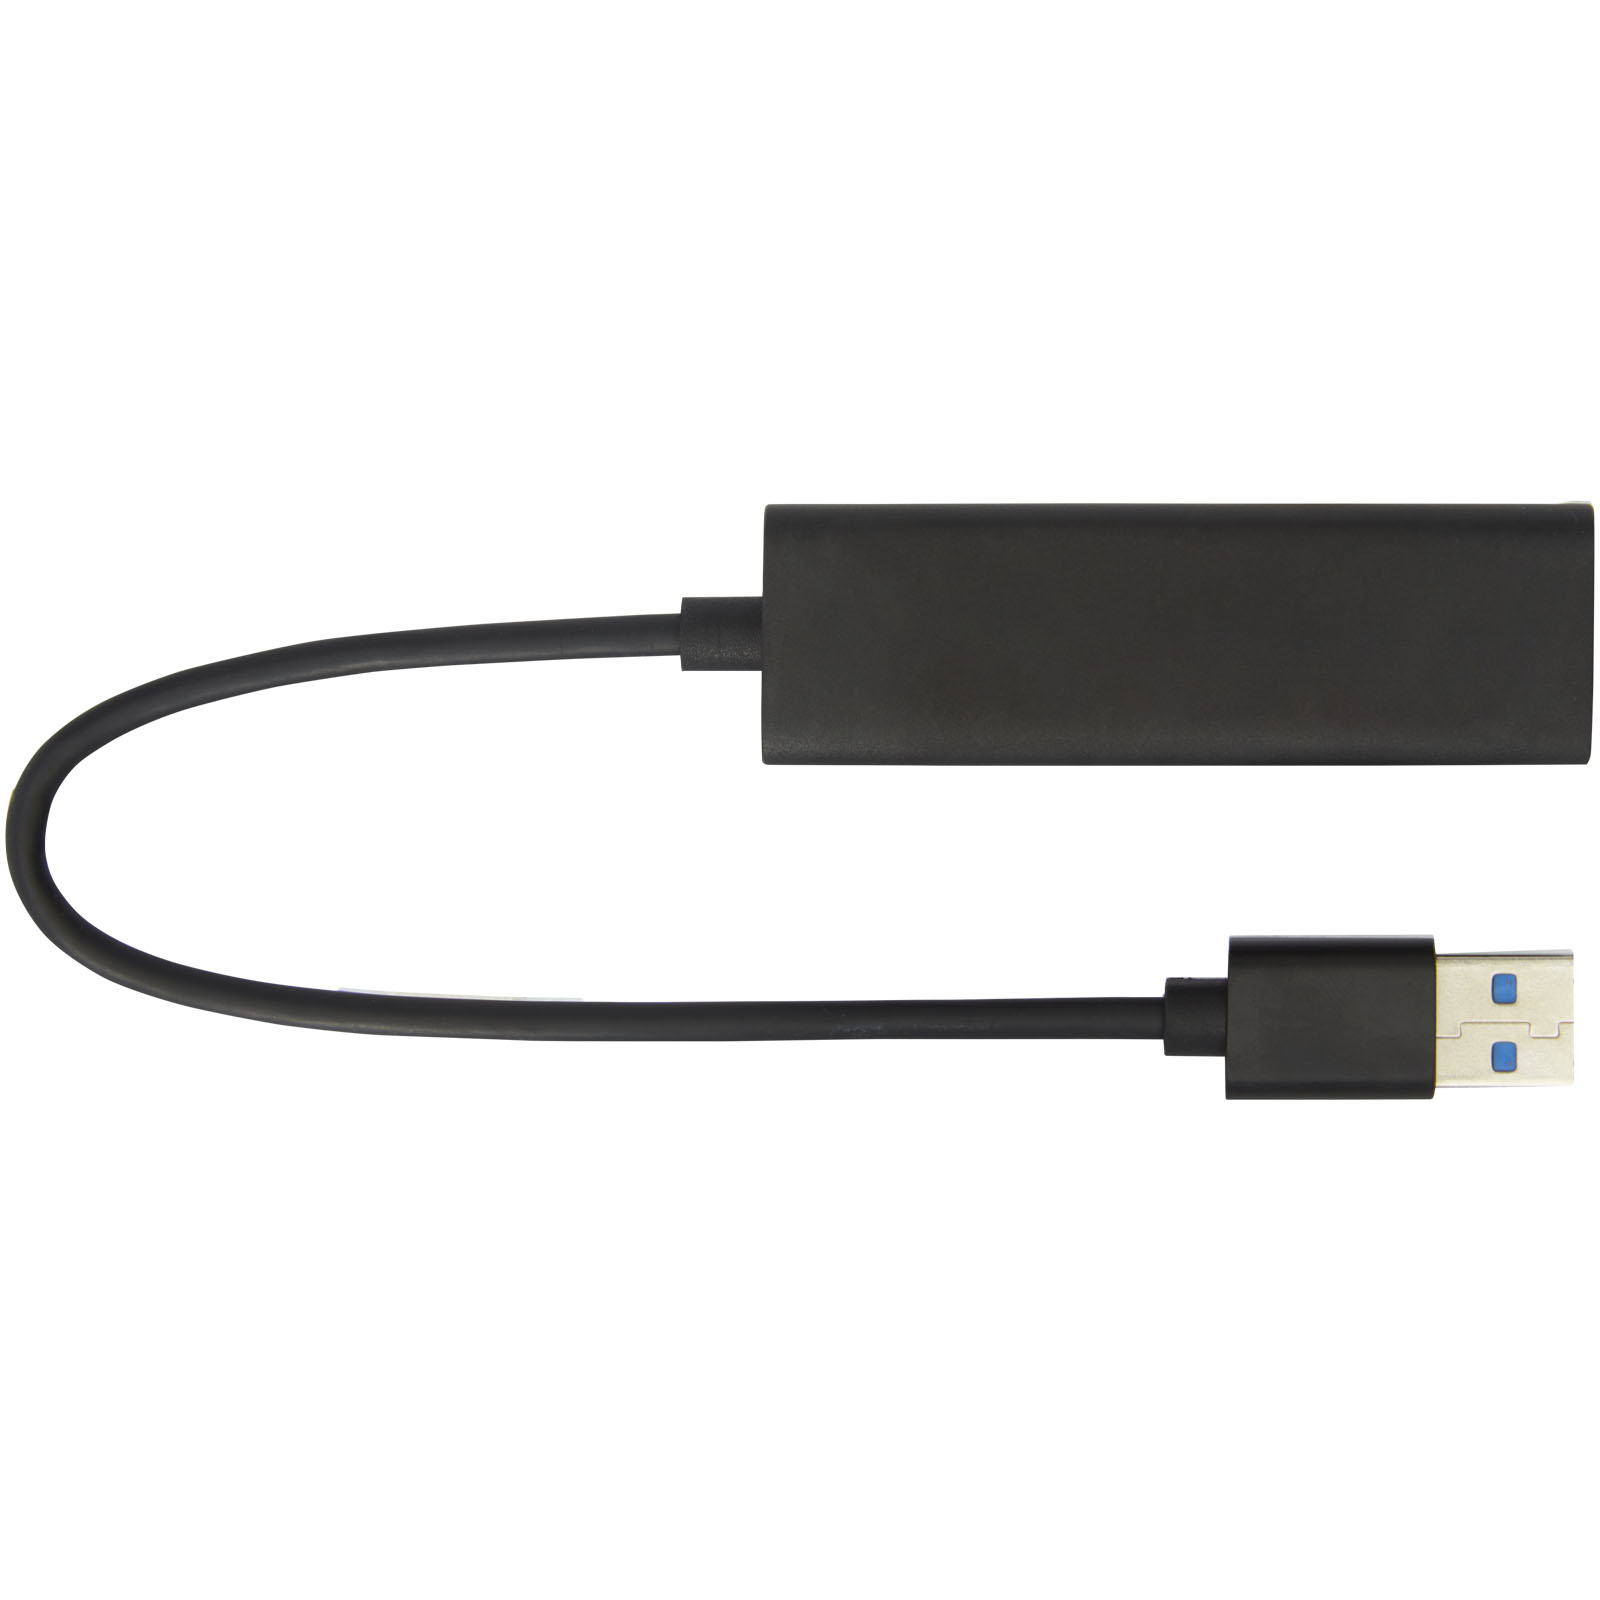 Hubs USB publicitaires - Hub USB 3.0 ADAPT en aluminium  - 3